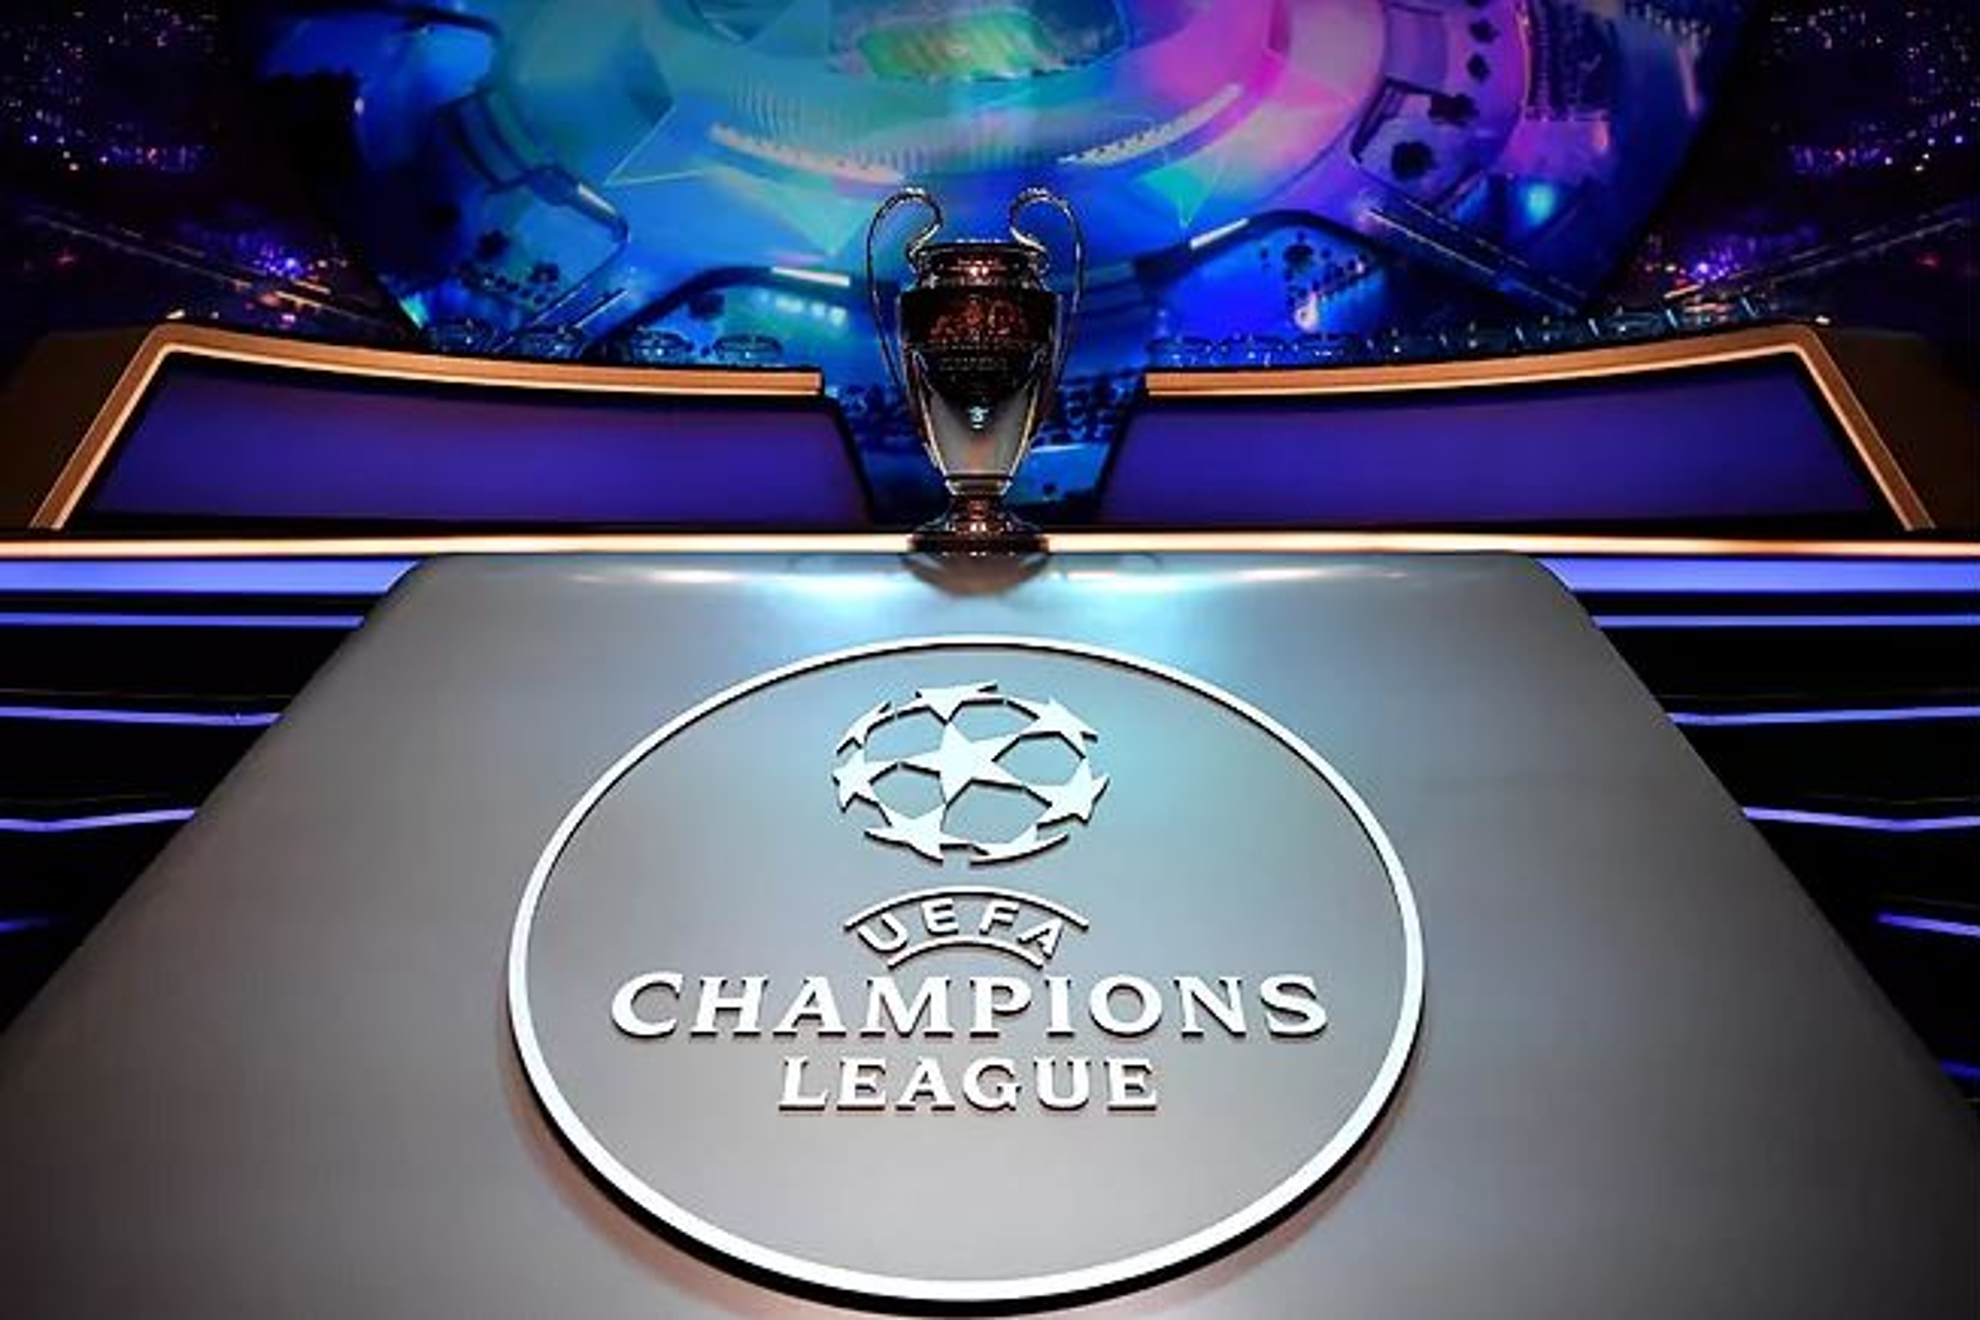 El trofeo de la Champions League. / Foto: Uefa.com